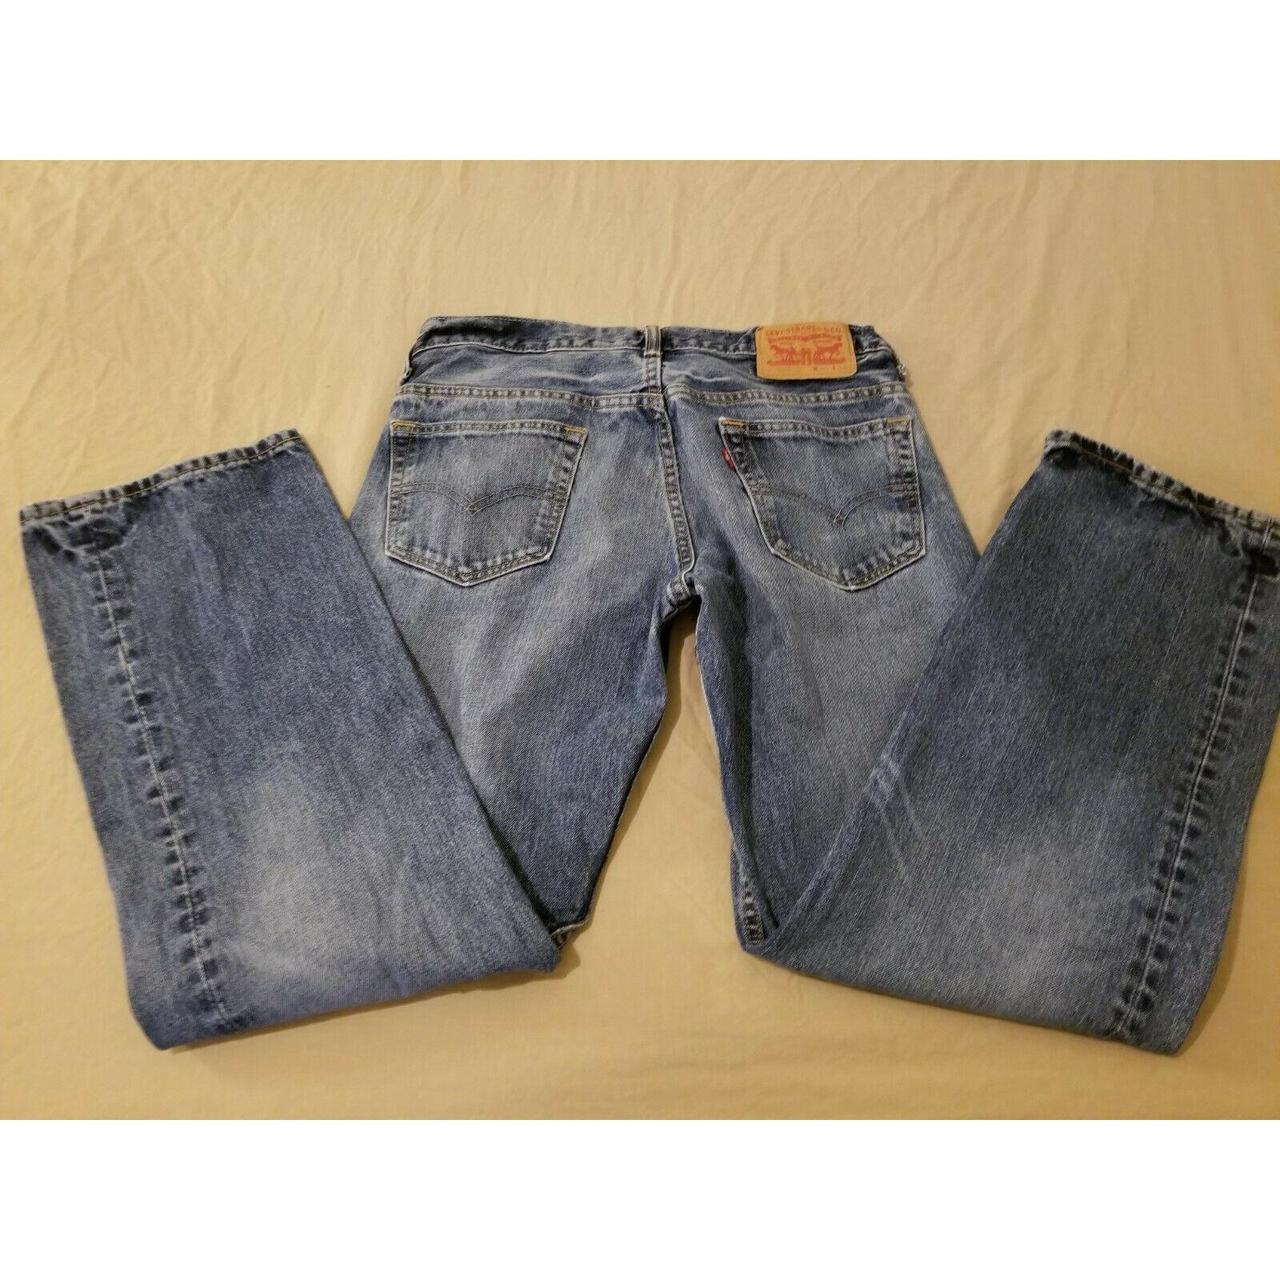 Product Image 1 - Mens Levis 569 Jeans 30x32